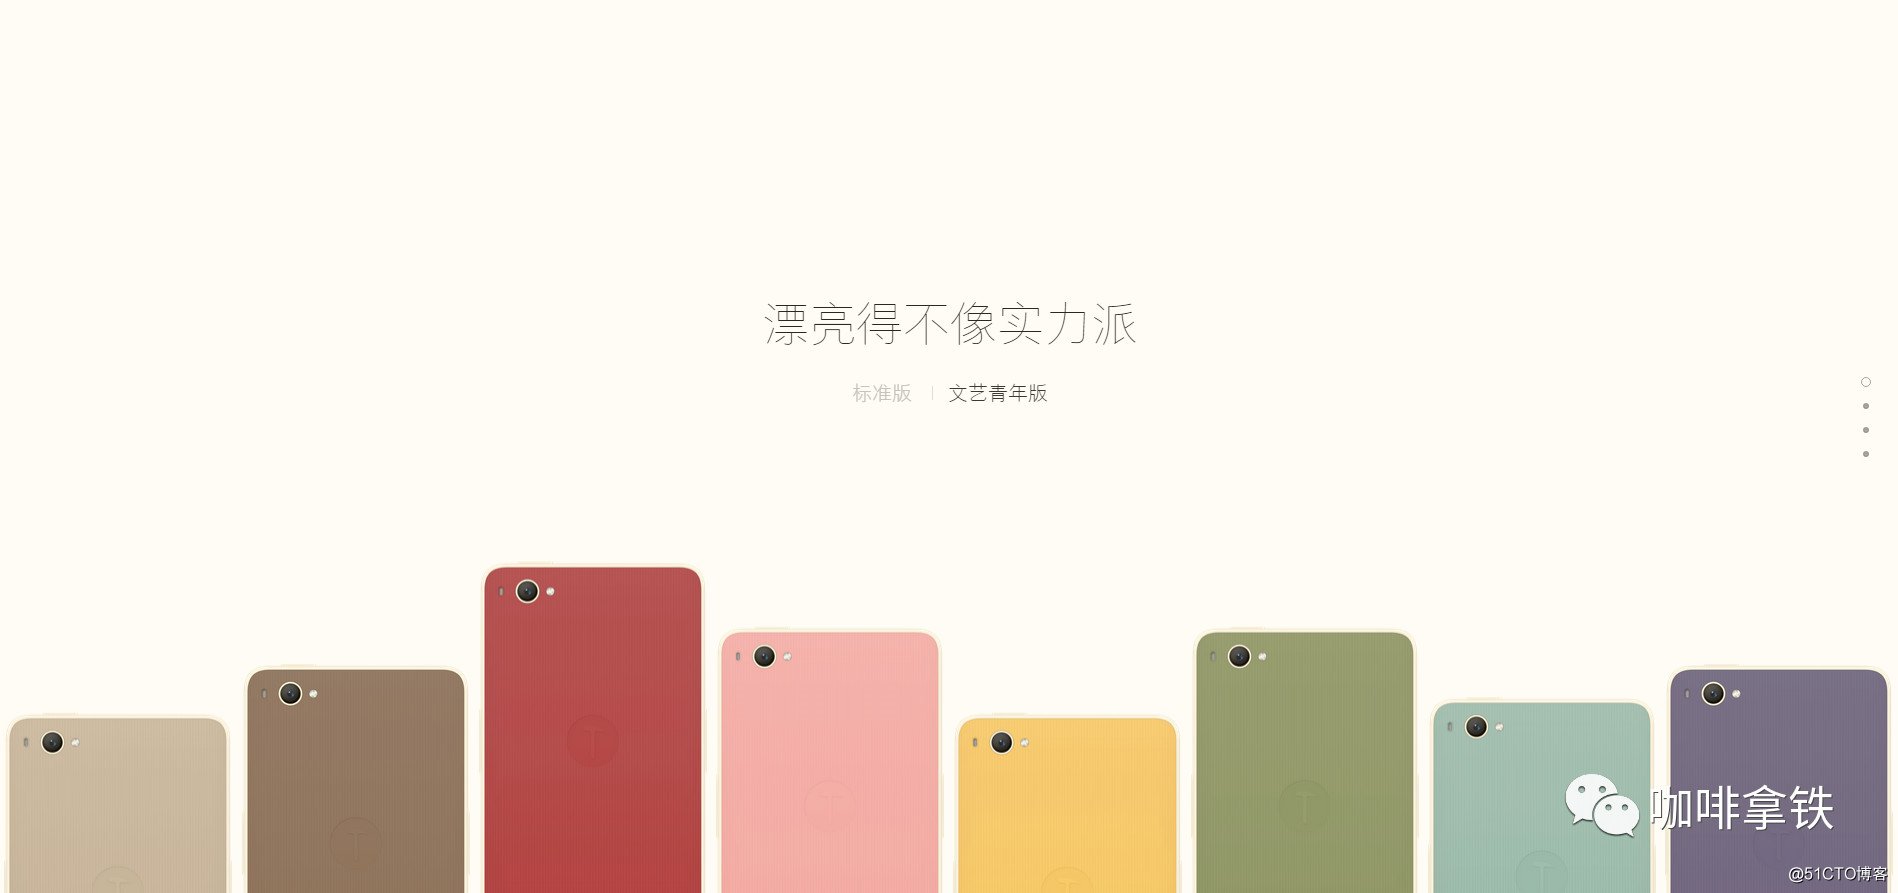 一本正经的聊聊手机主题颜色随手机壳颜色变化的几种方案